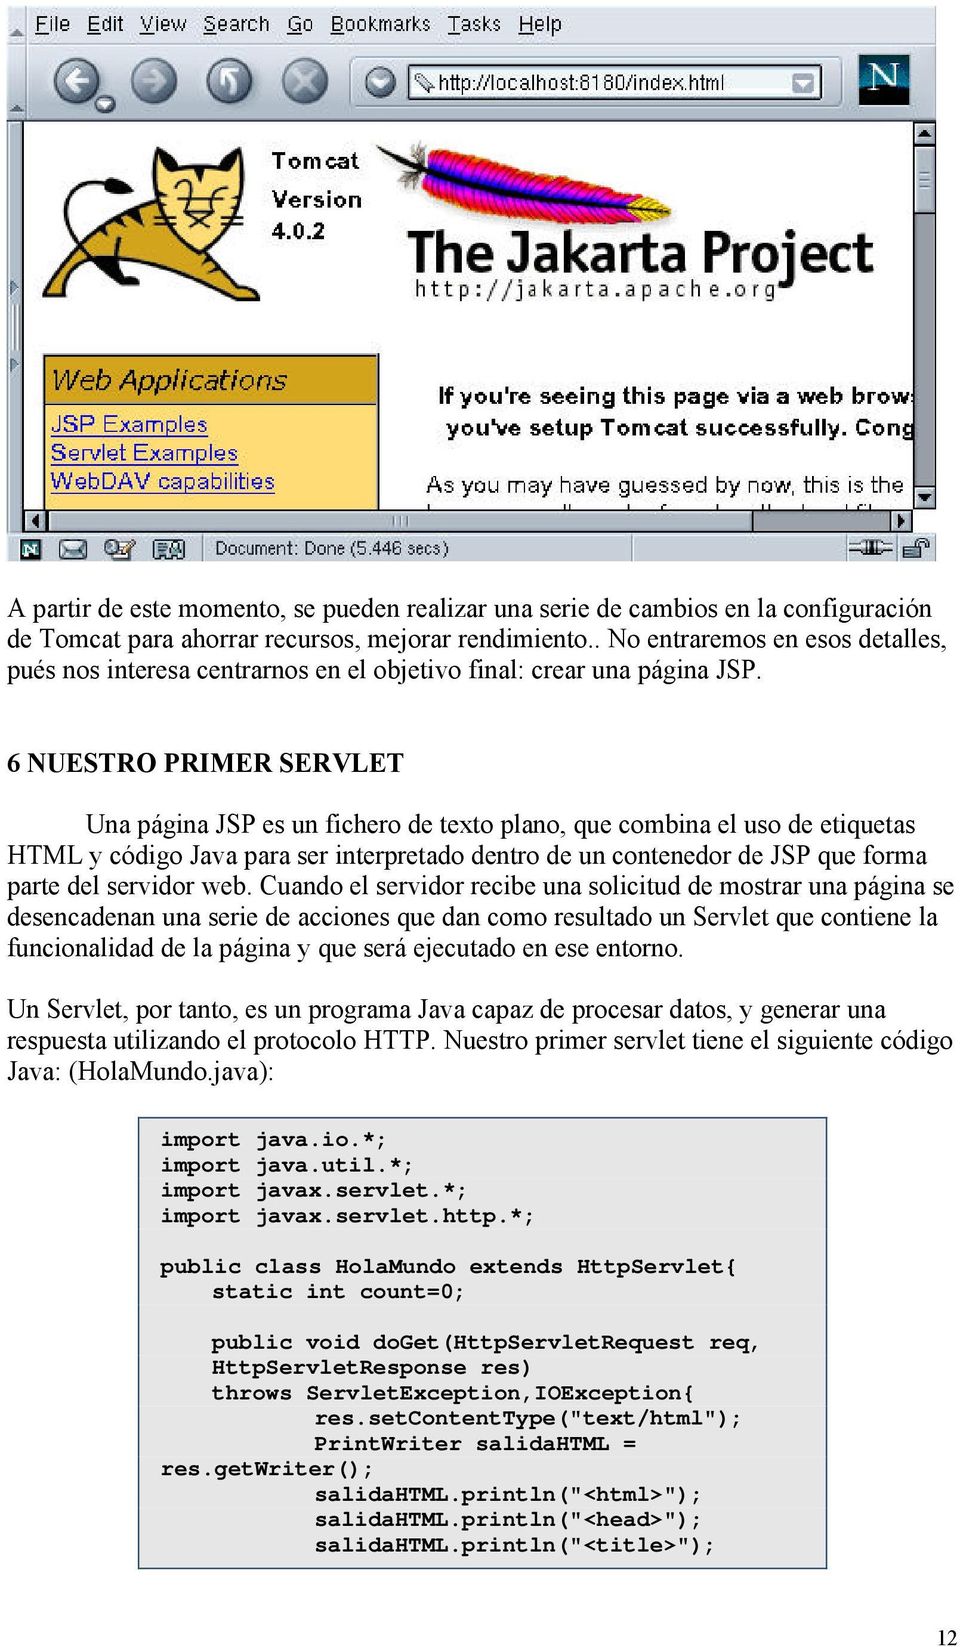 6 NUESTRO PRIMER SERVLET Una página JSP es un fichero de texto plano, que combina el uso de etiquetas HTML y código Java para ser interpretado dentro de un contenedor de JSP que forma parte del